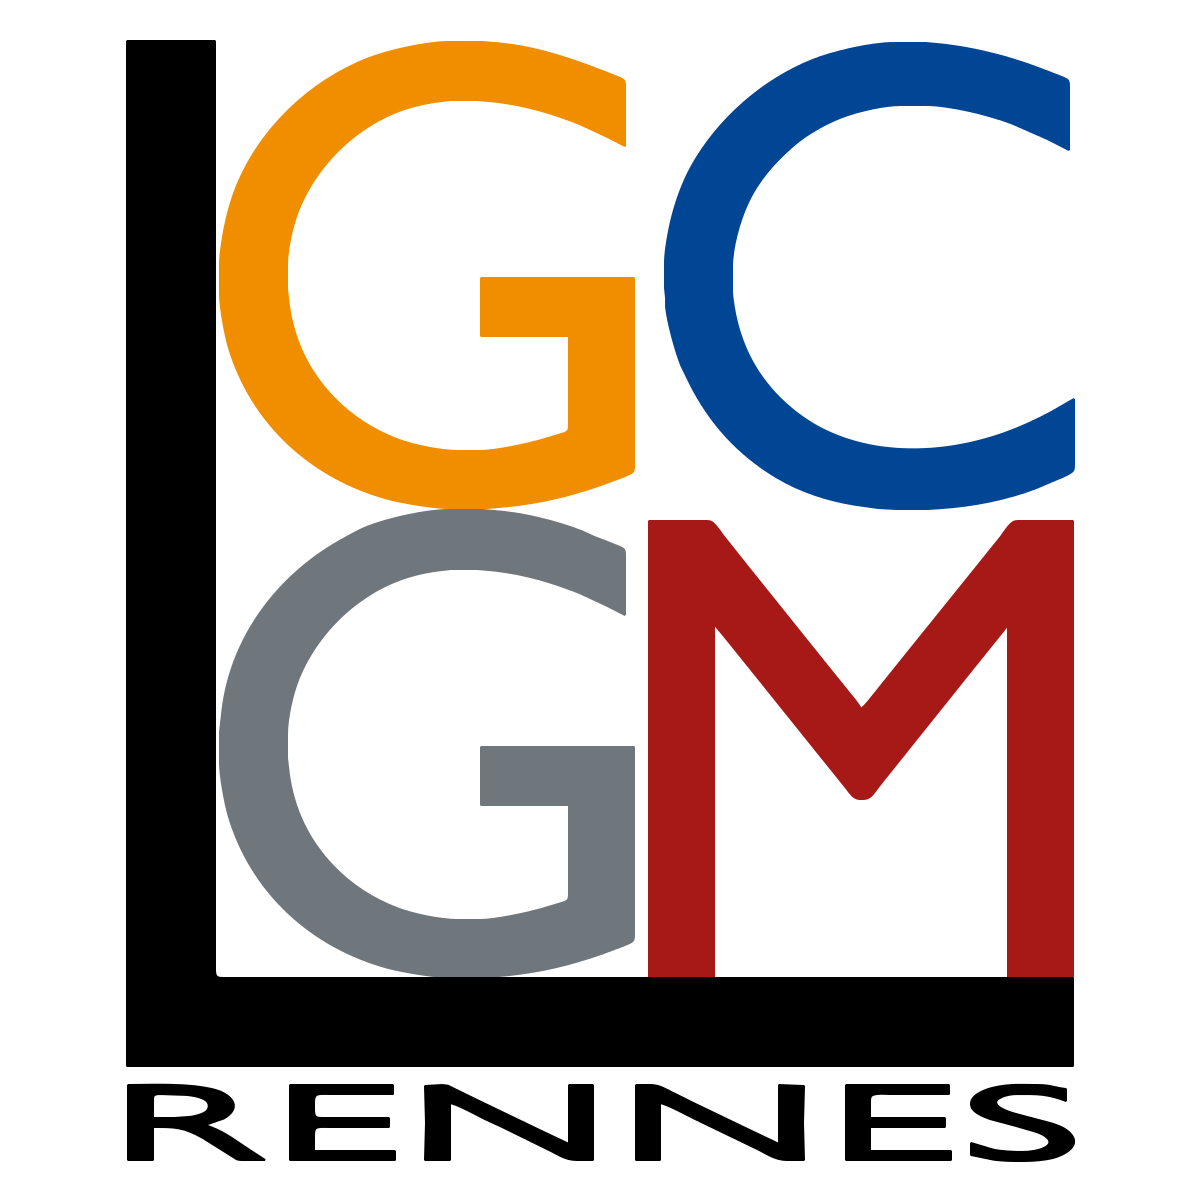 LGCGM - Laboratoire de Génie Civil et Génie Mécanique